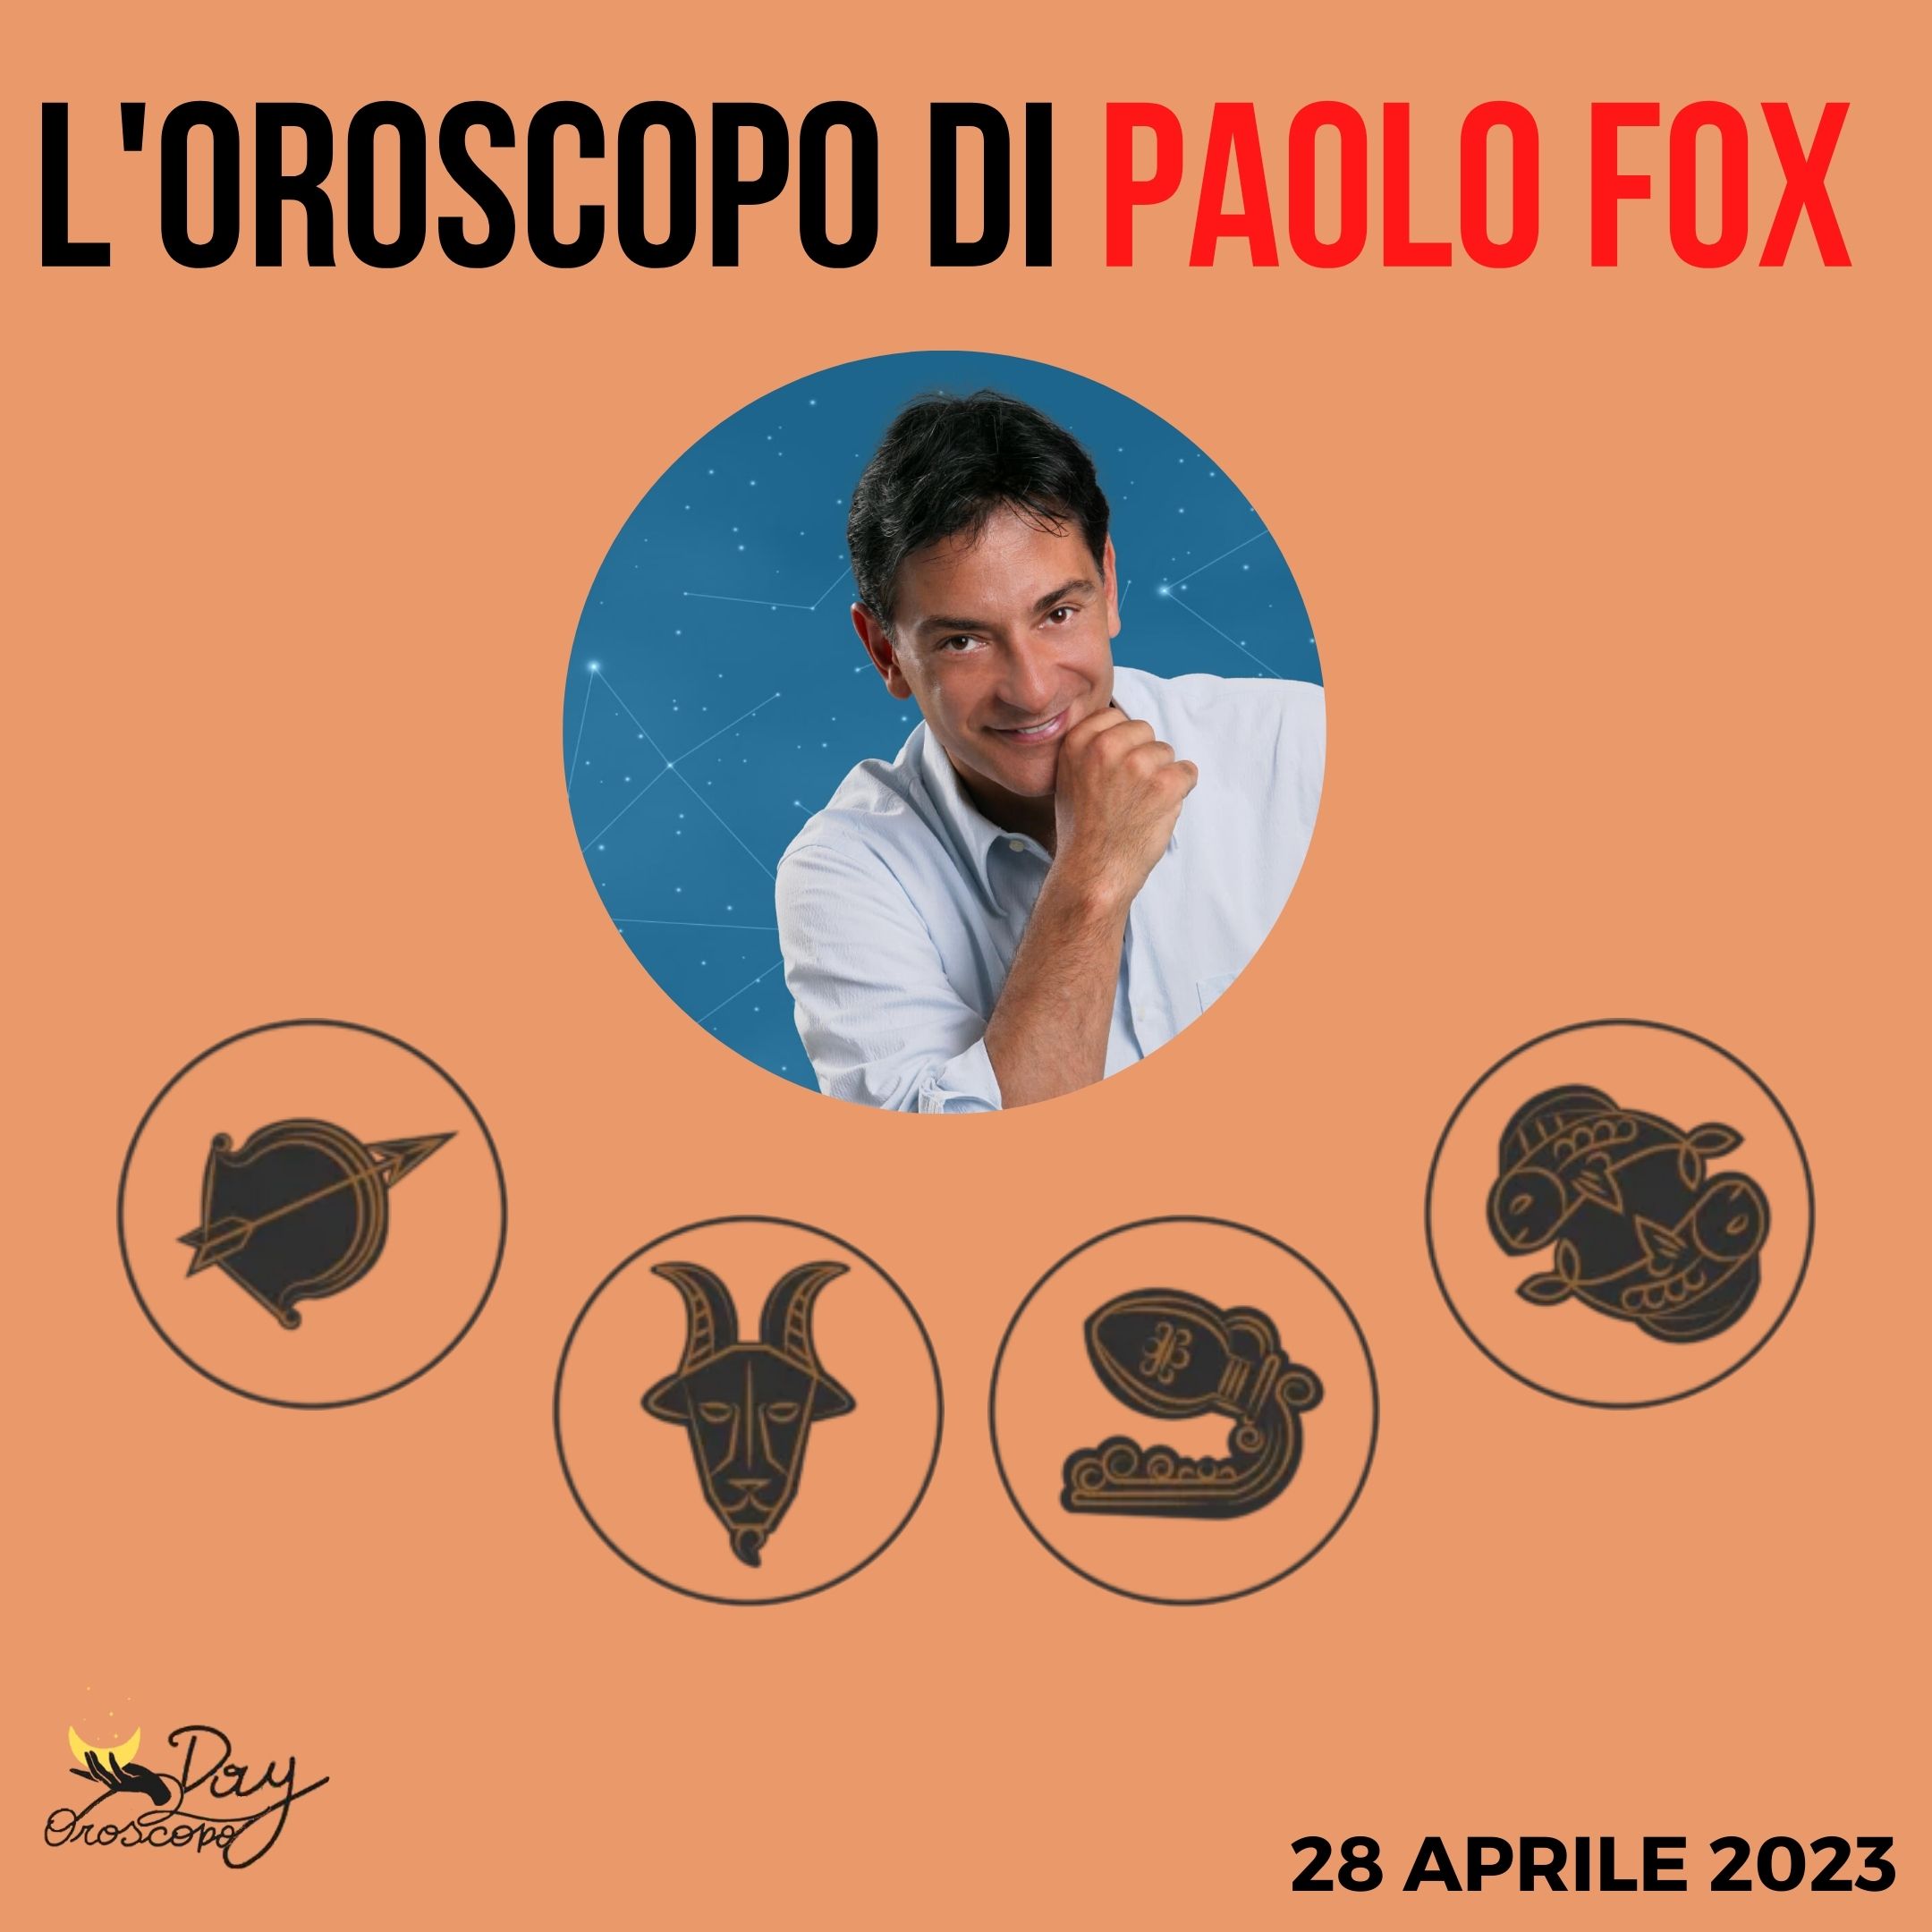 Oroscopo oggi domani Paolo Fox 28 aprile Sagittario Capricorno Acquario Pesci